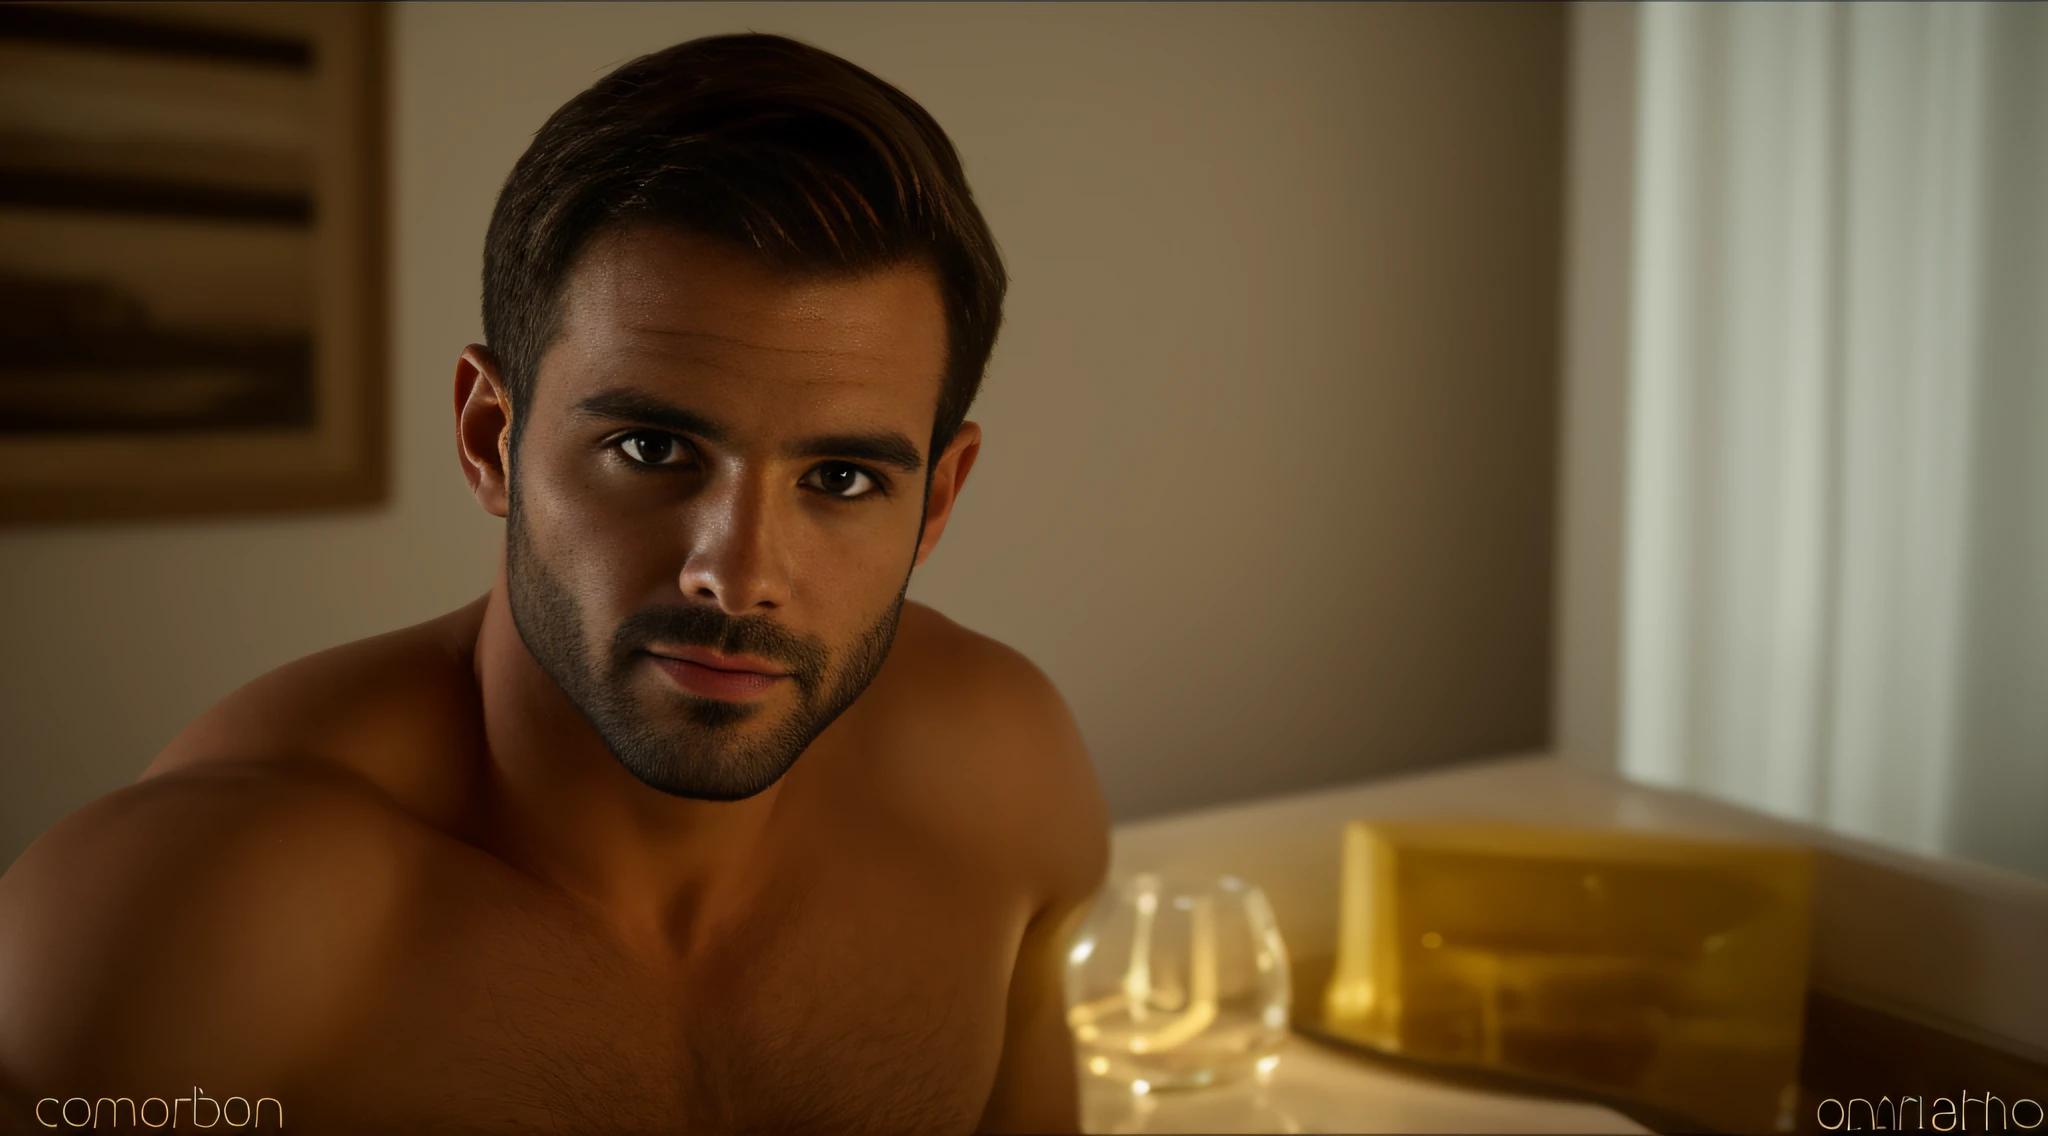 30-летний мужчина из Бразилии., бородатый, очень красивый, глядя в камеру, детальное изображение, UHD, 8К